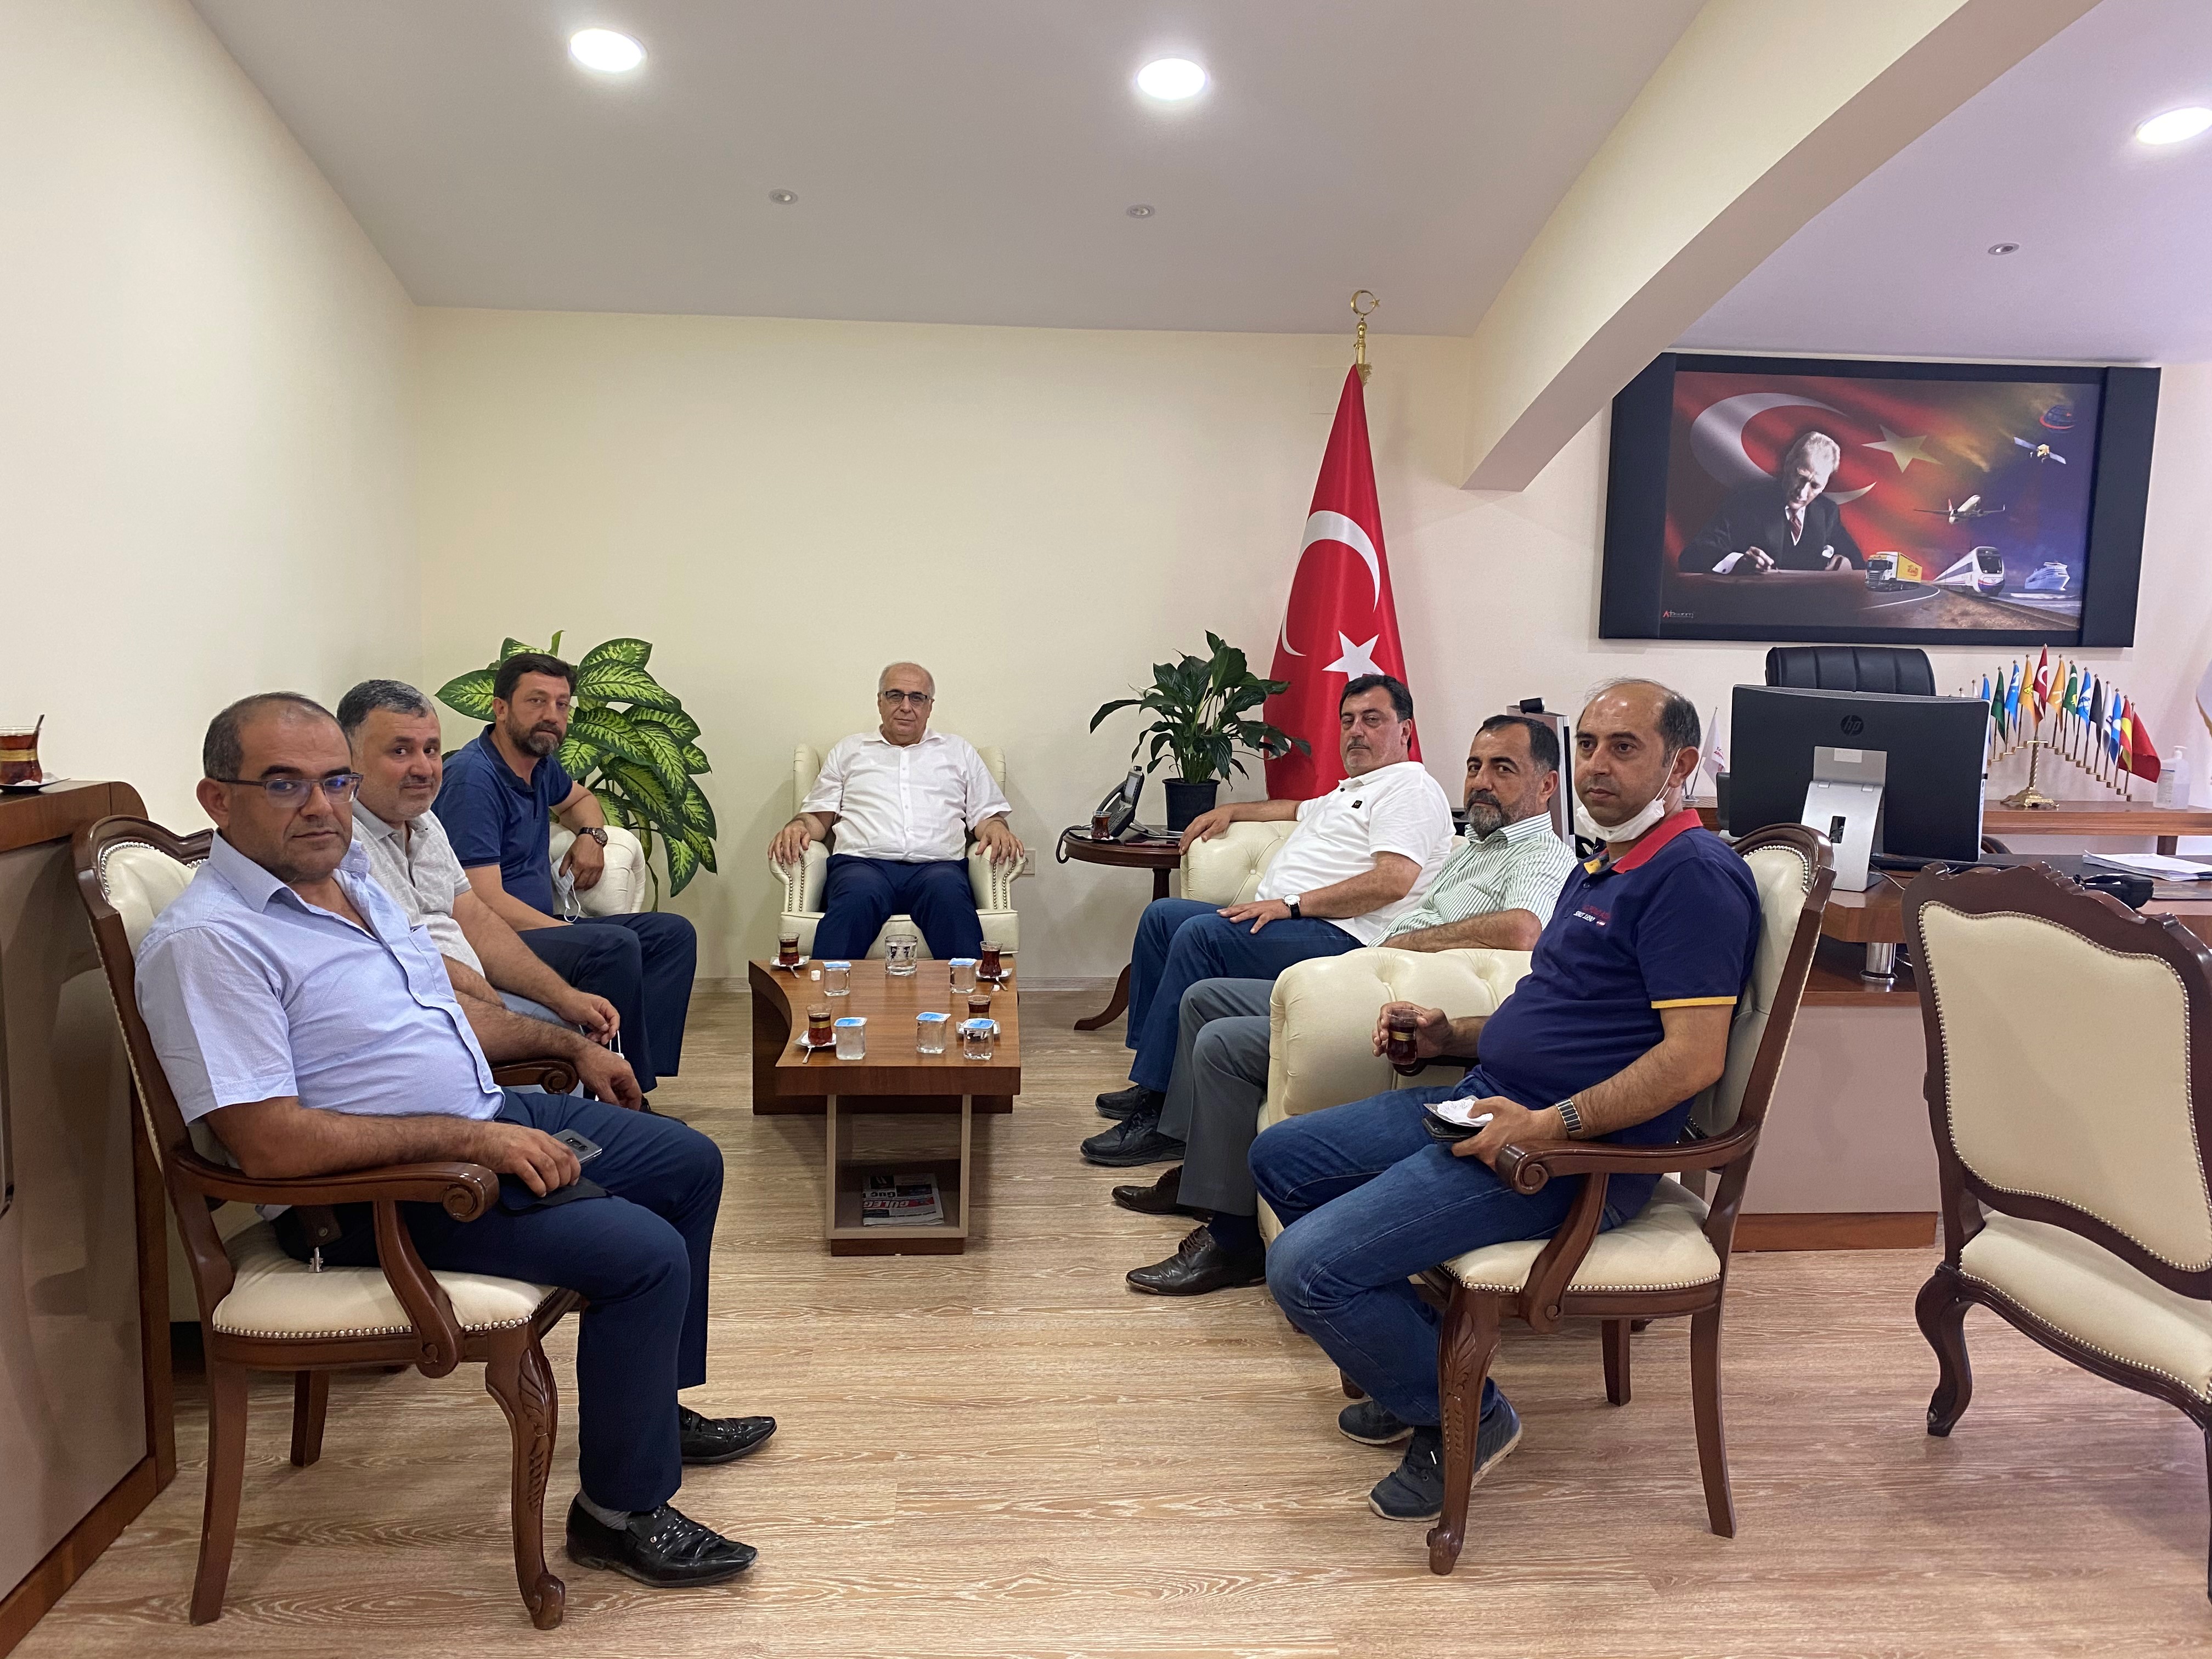 Gaziantep Çalışma Grubu Üyeleri Ulaştırma ve Altyapı Bakanlığı Gaziantep Bölge Müdürlüğünü Ziyaret Etti